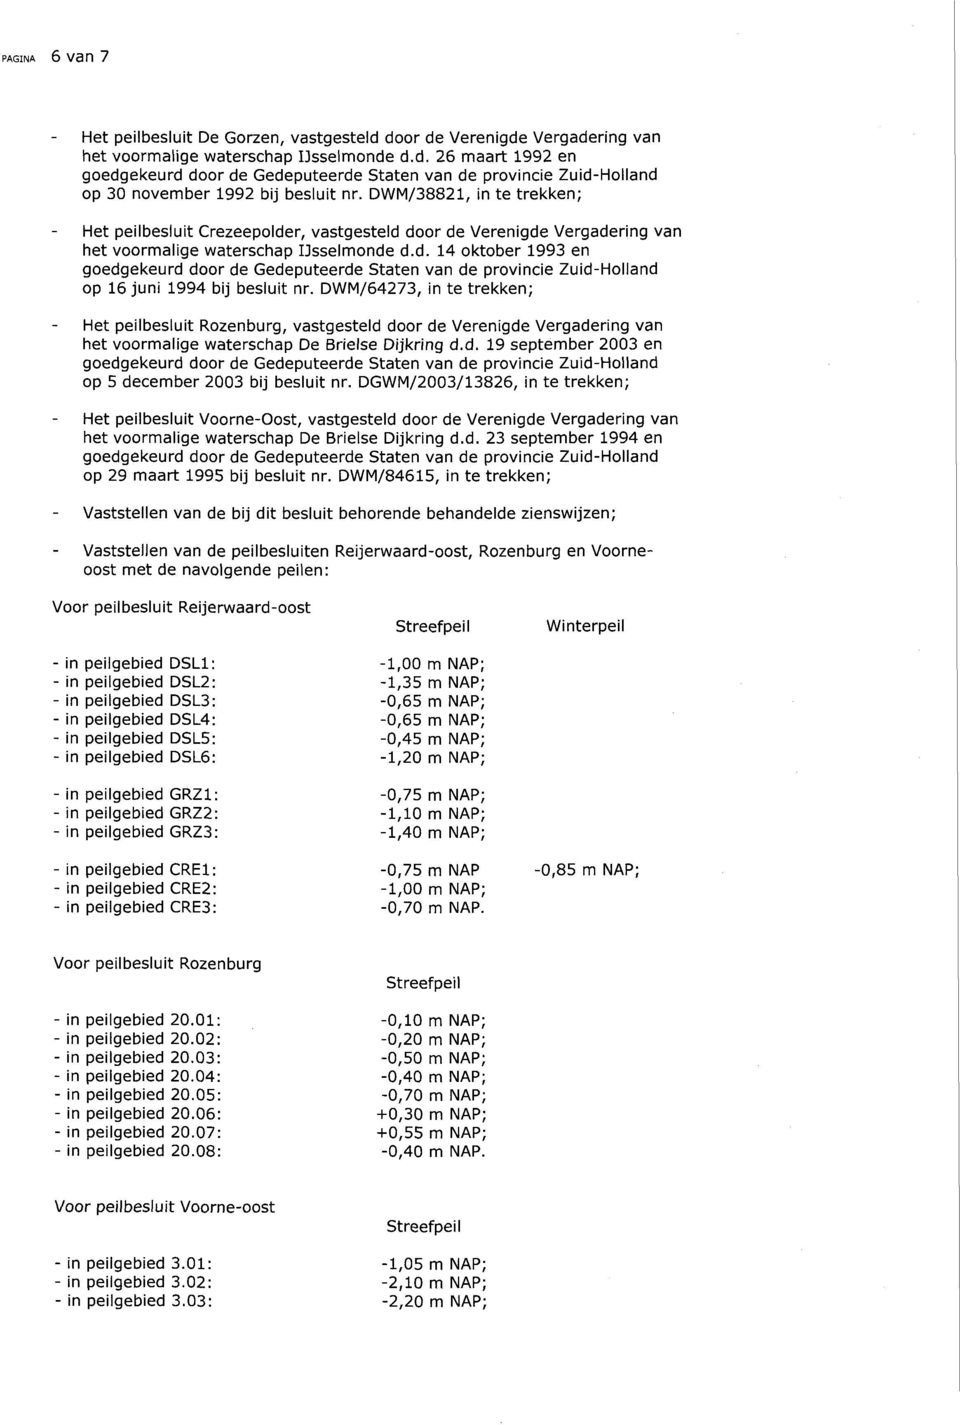 DWM/64273, in te trekken; Het peilbesluit Rozenburg, vastgesteld door de Verenigde Vergadering van het voormalige waterschap De Brielse Dijkring d.d. 19 september 2003 en goedgekeurd door de Gedeputeerde Staten van de provincie Zuid-Holland op 5 december 2003 bij besluit nr.